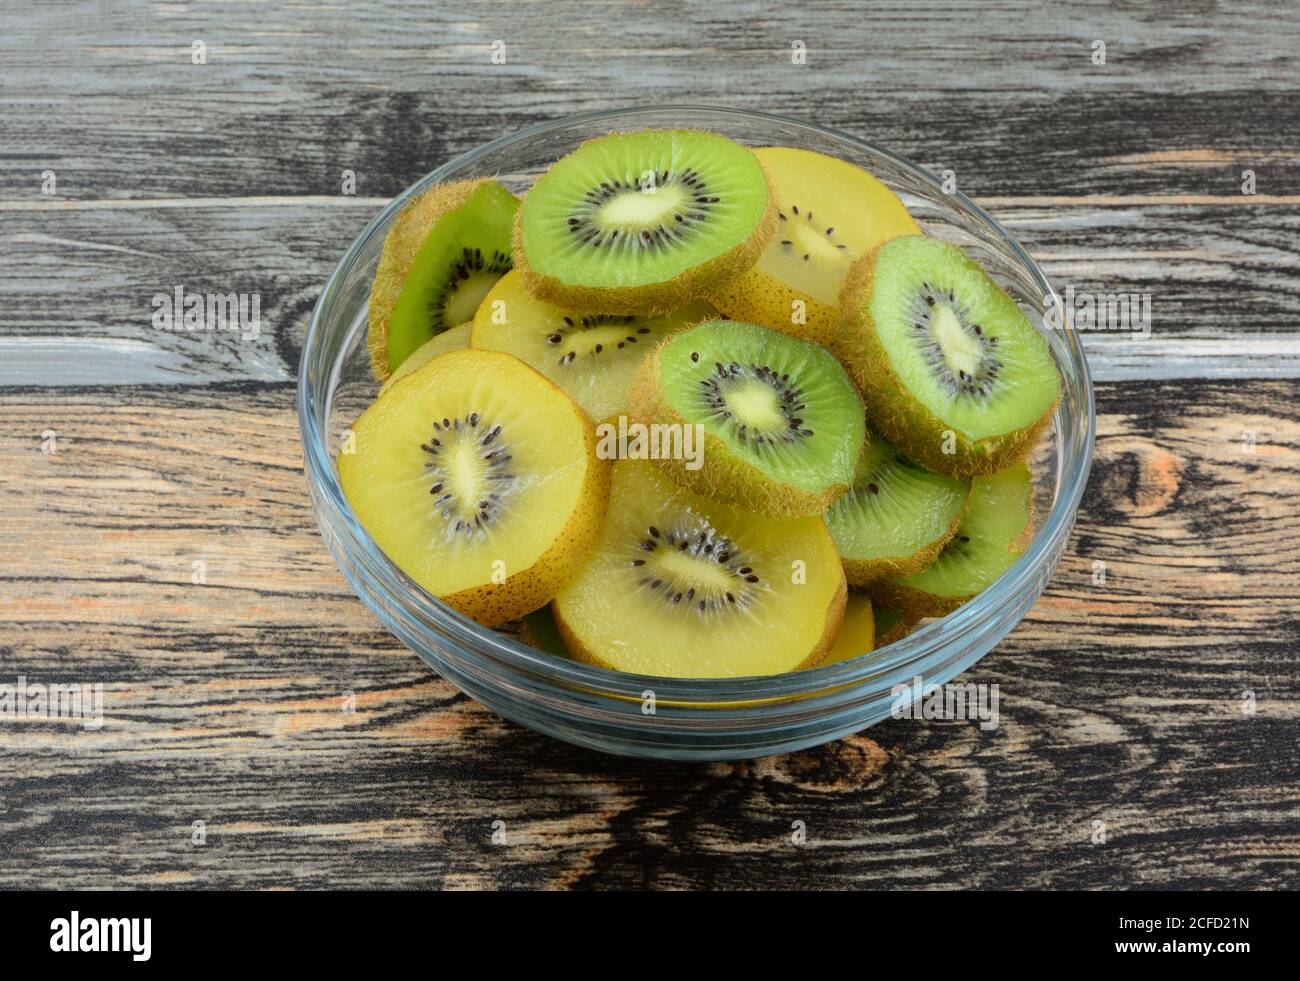 Rebanadas de fruta de kiwi verde y amarillo dorado frescas crudas cuenco de cristal en la mesa Foto de stock